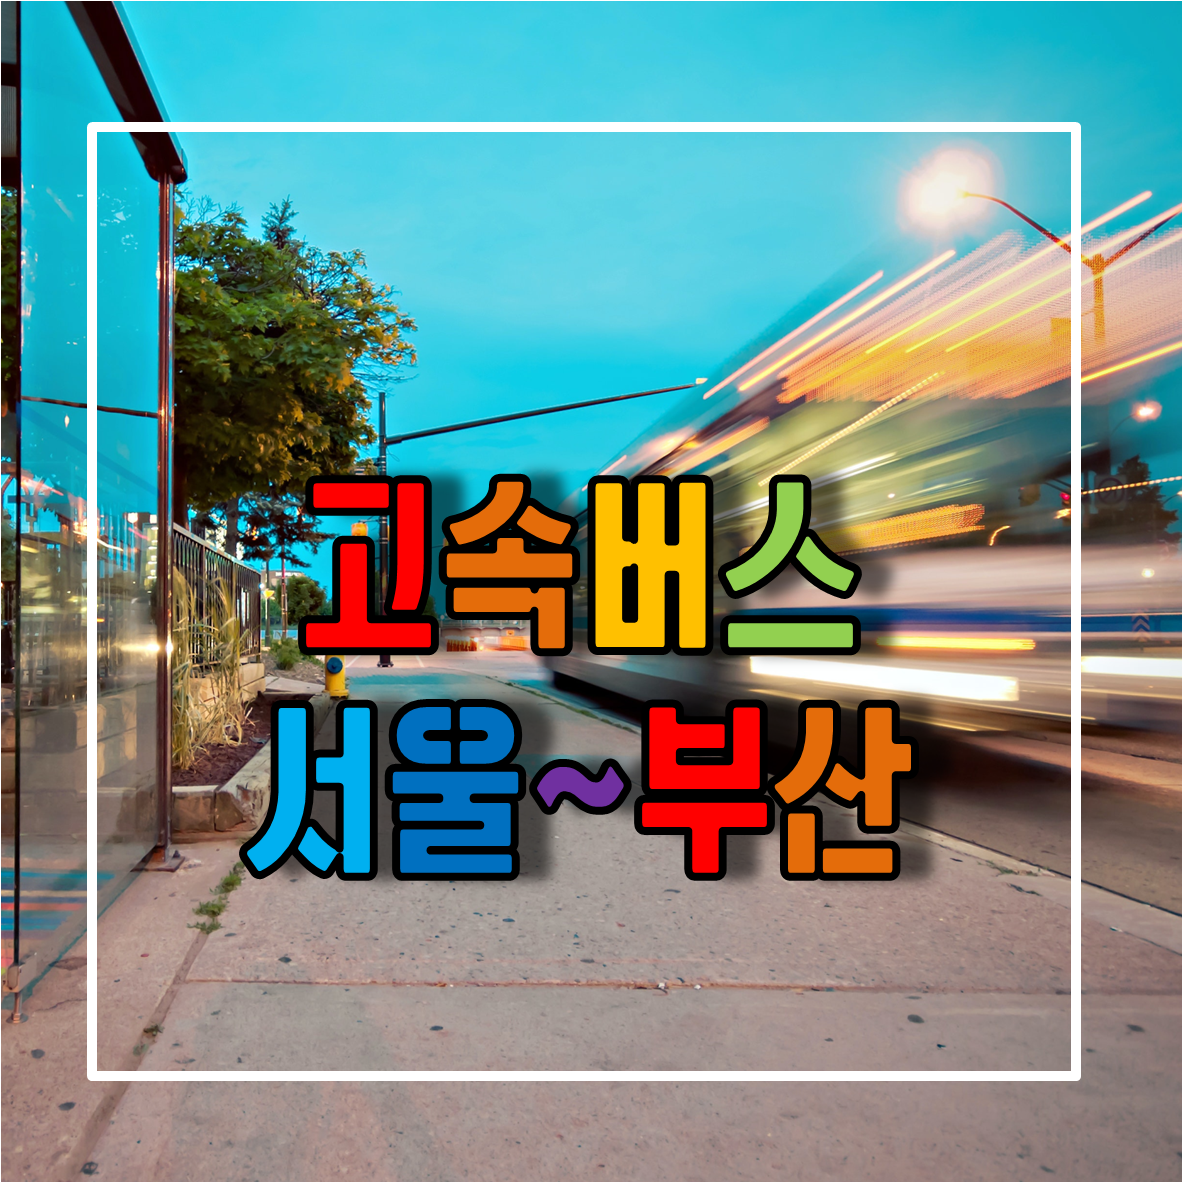 서울에서 부산가는 고속버스 시간표